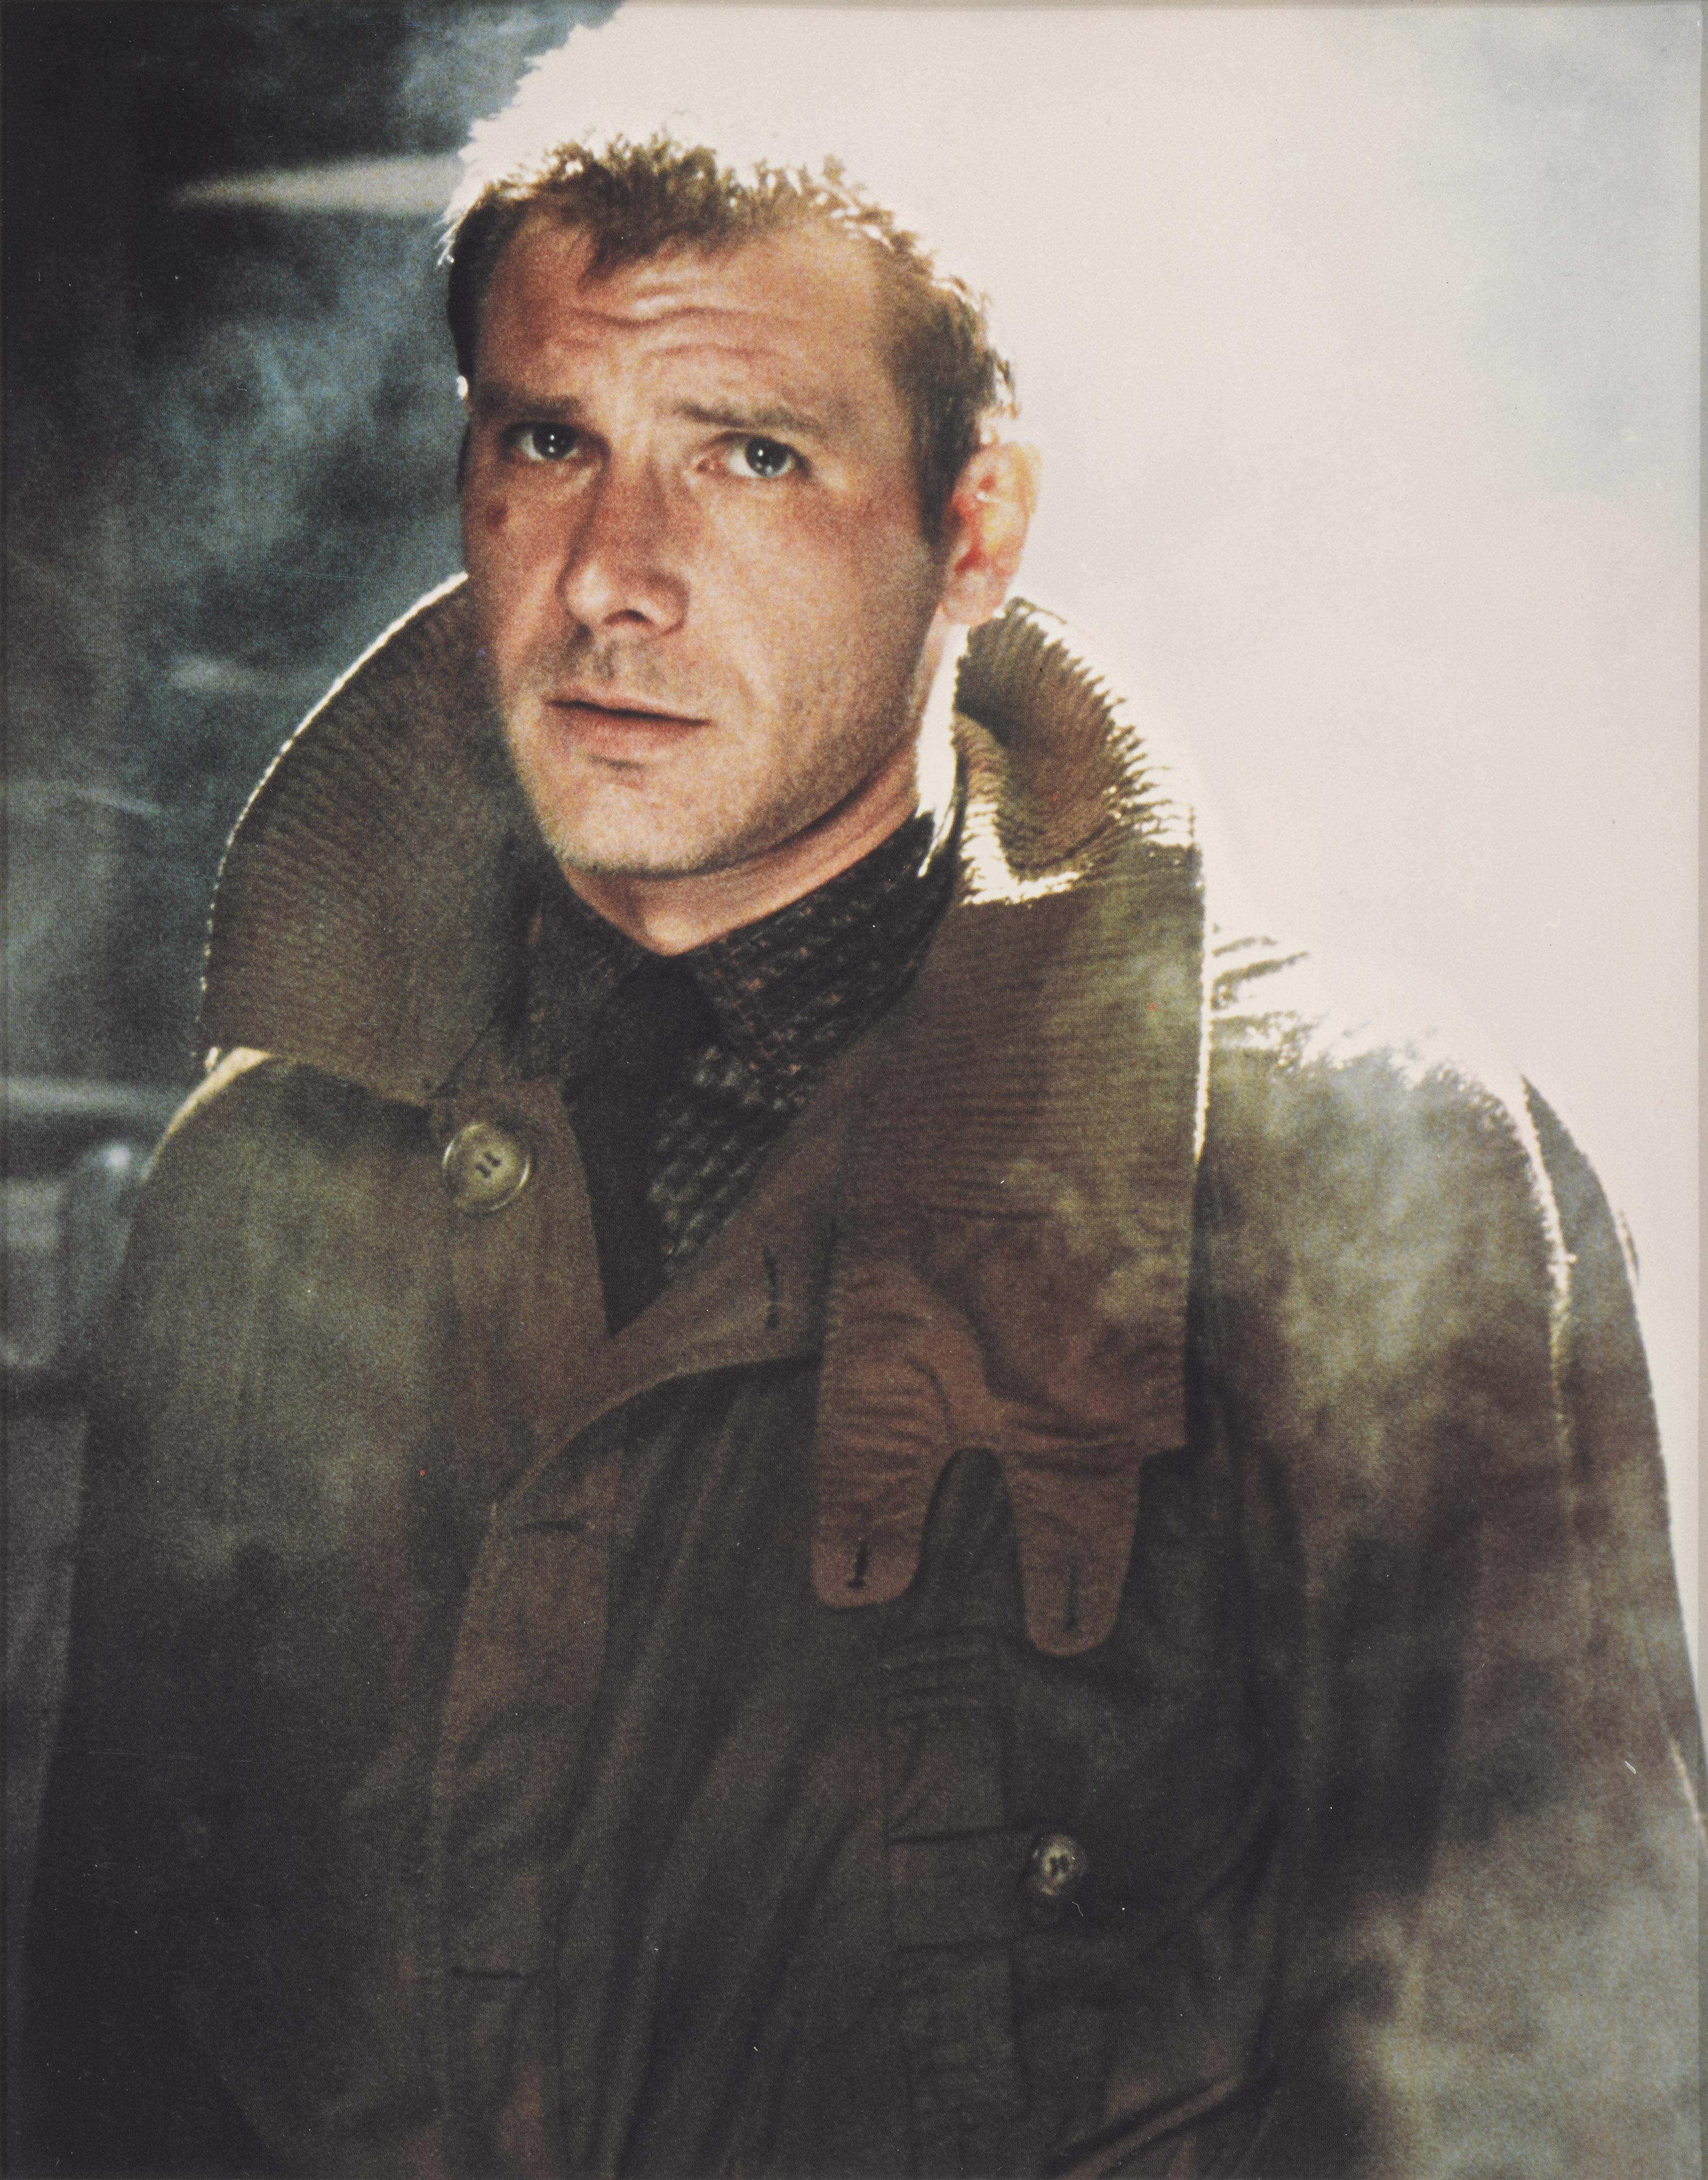 Das große US-Farbfoto zu Ridley Scotts Science-Fiction-Film aus den 1980er Jahren ist ein echter Kult-Klassiker geworden. Fünfunddreißig Jahre später wurde eine Fortsetzung (Blade Runner 2049) gedreht, ebenfalls mit Harrison Ford in der Hauptrolle.